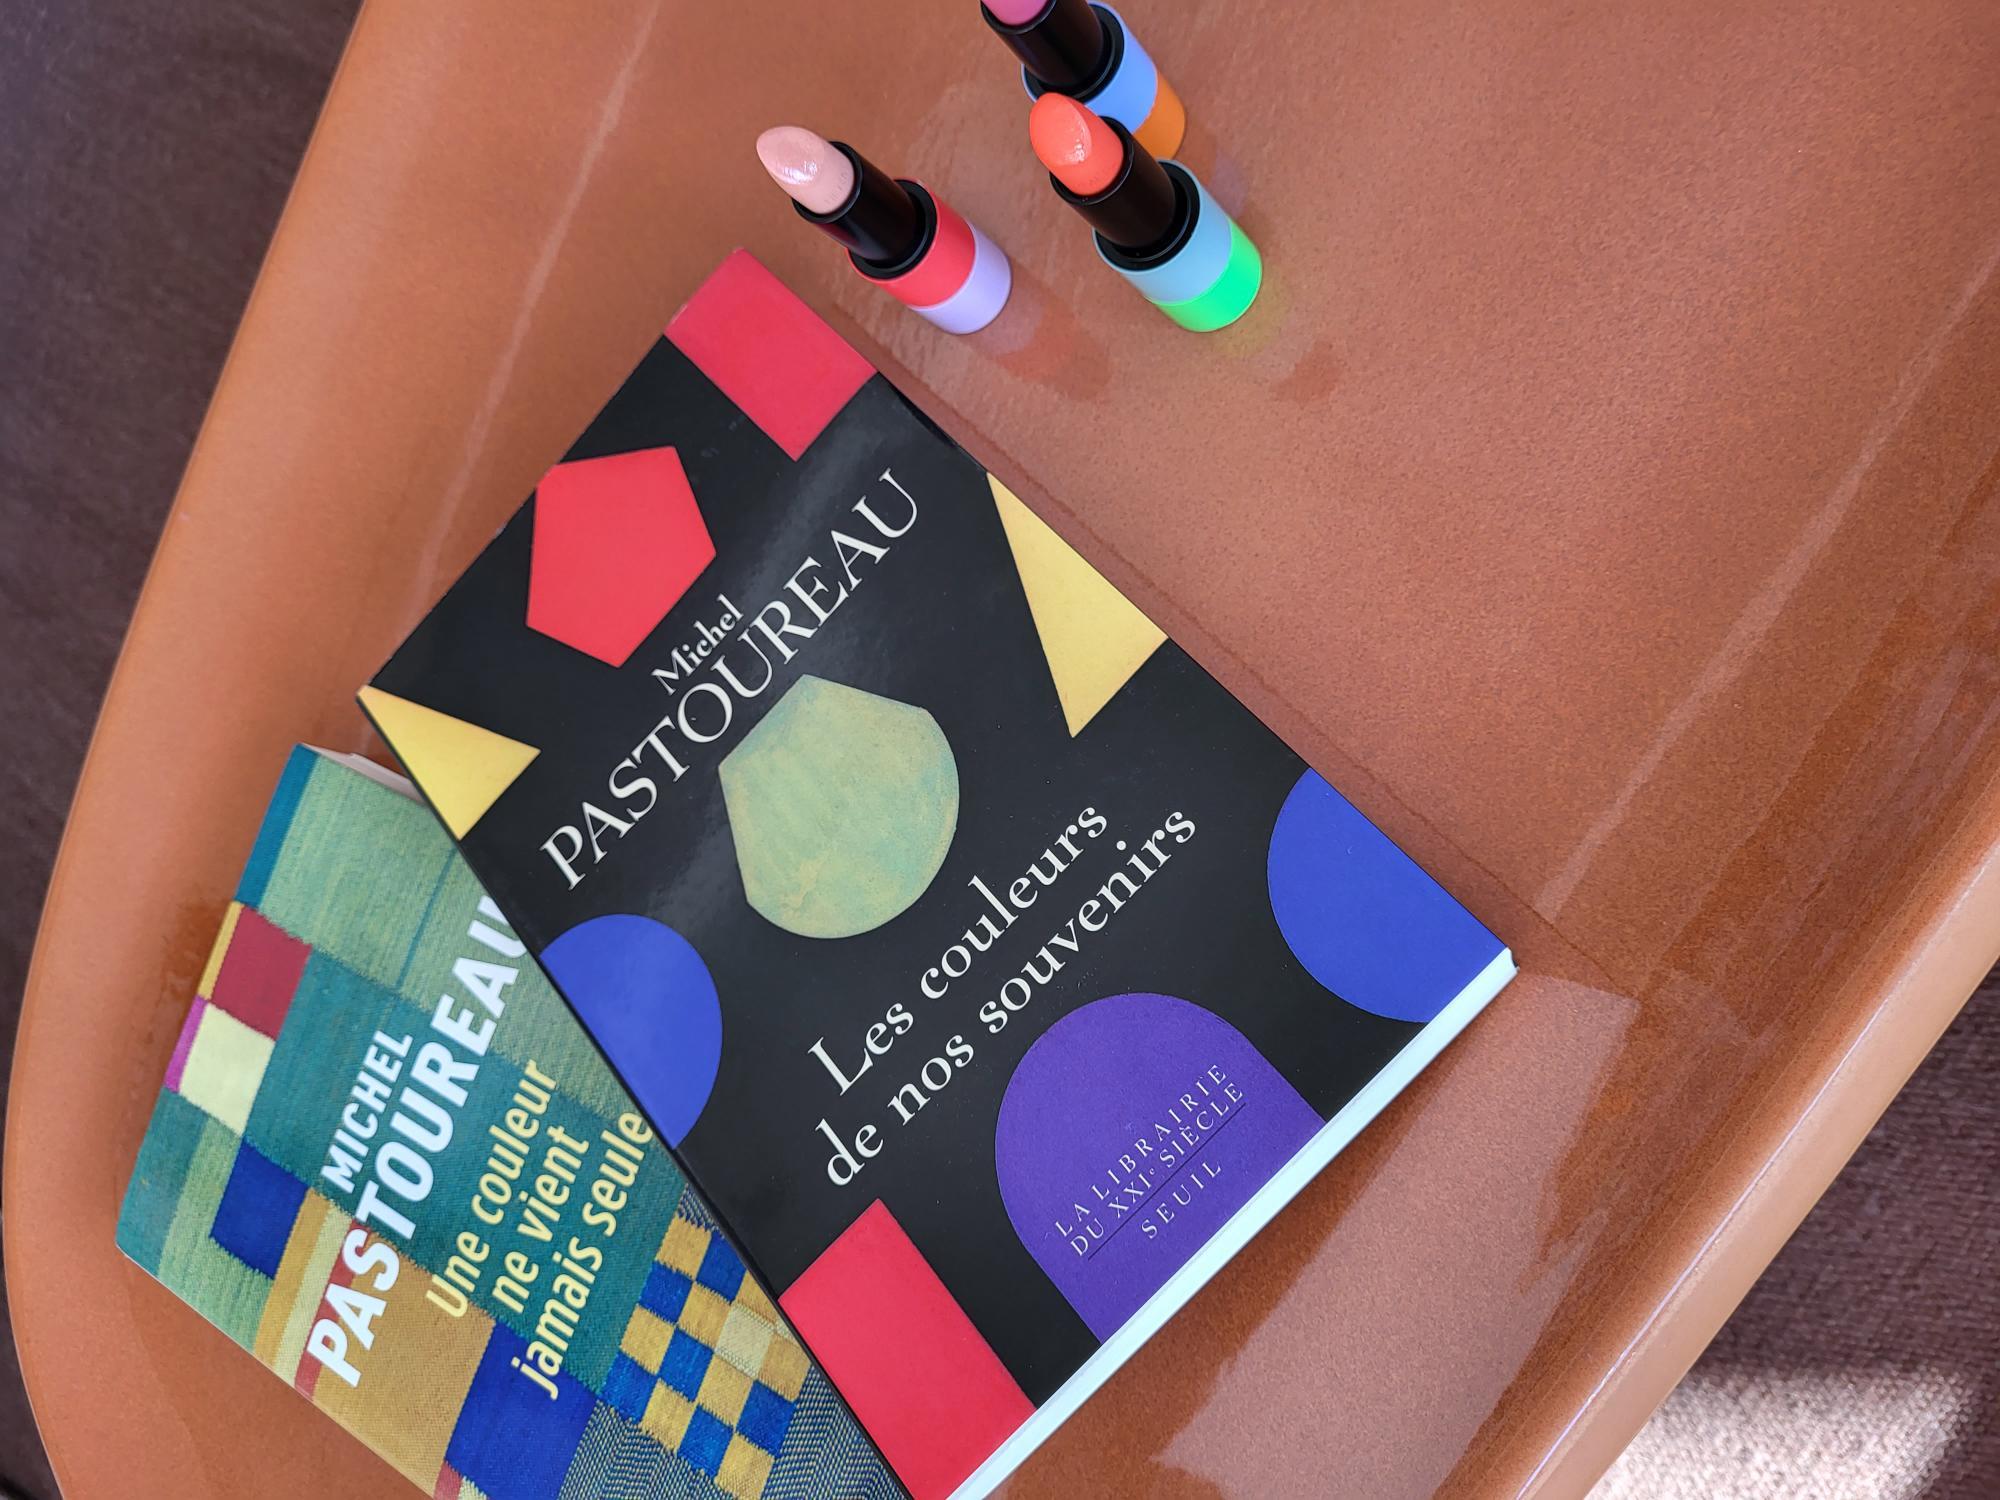 El libro "Los colores de nuestros recuerdos" de Michel Pastoureau junto con los ic